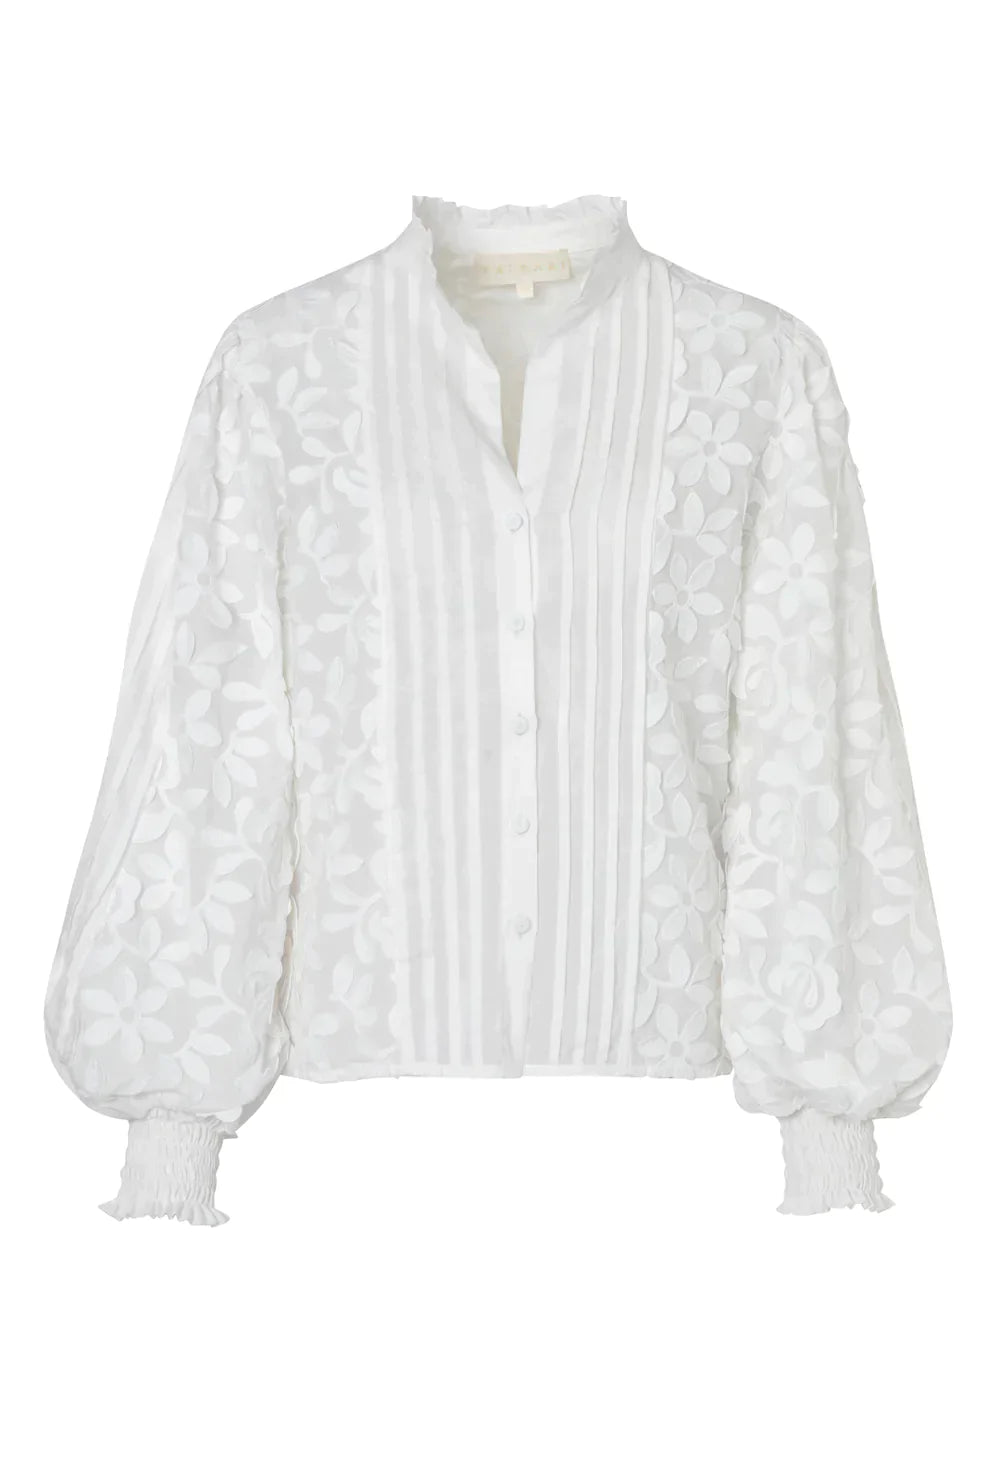 Waimari Magnolia Shirt - Premium Shirts & Tops from Marina St Barth - Just $315! Shop now at Marina St Barth